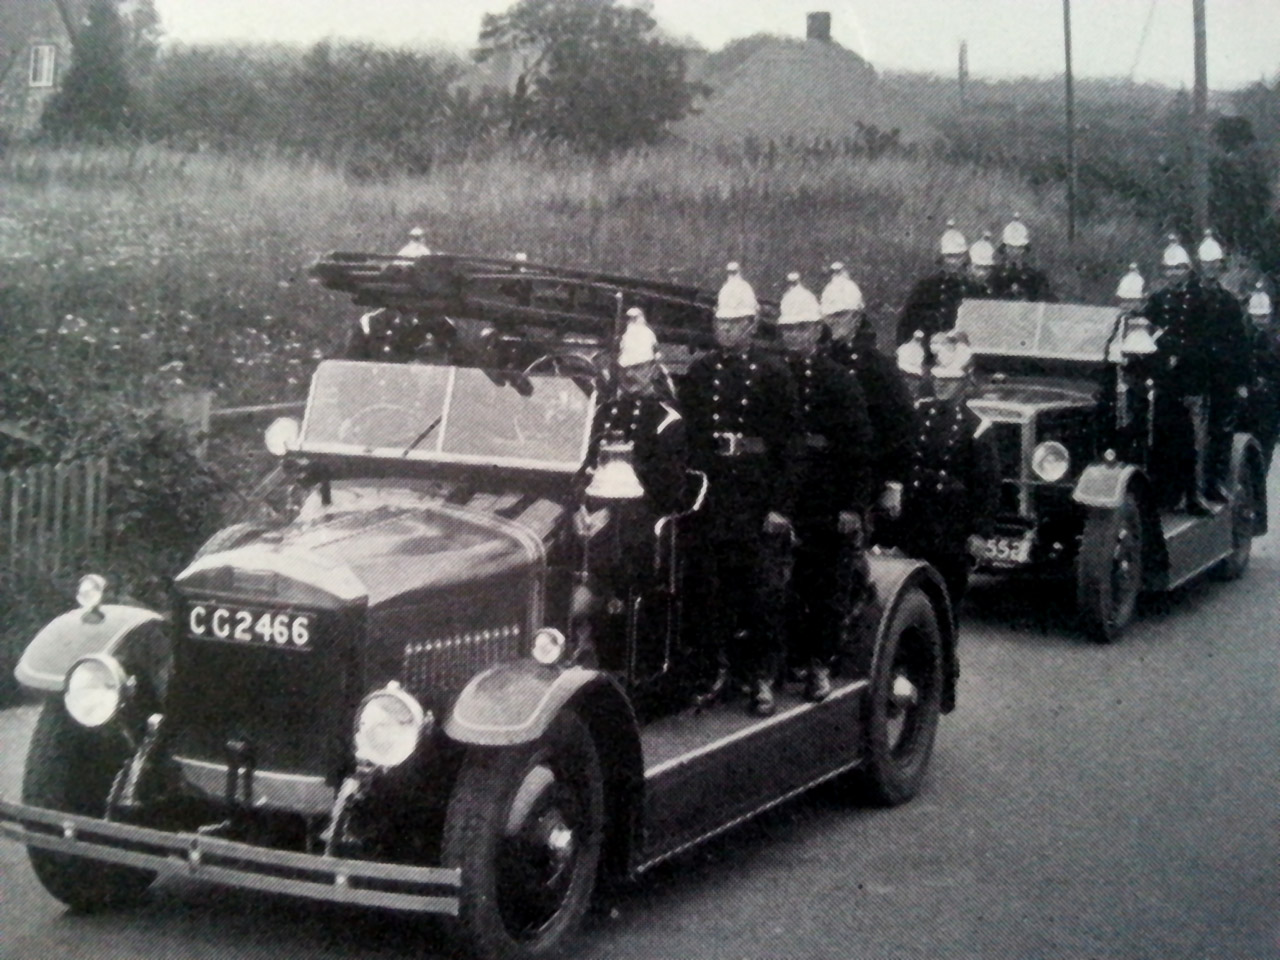 The Eastleigh Fire Brigade